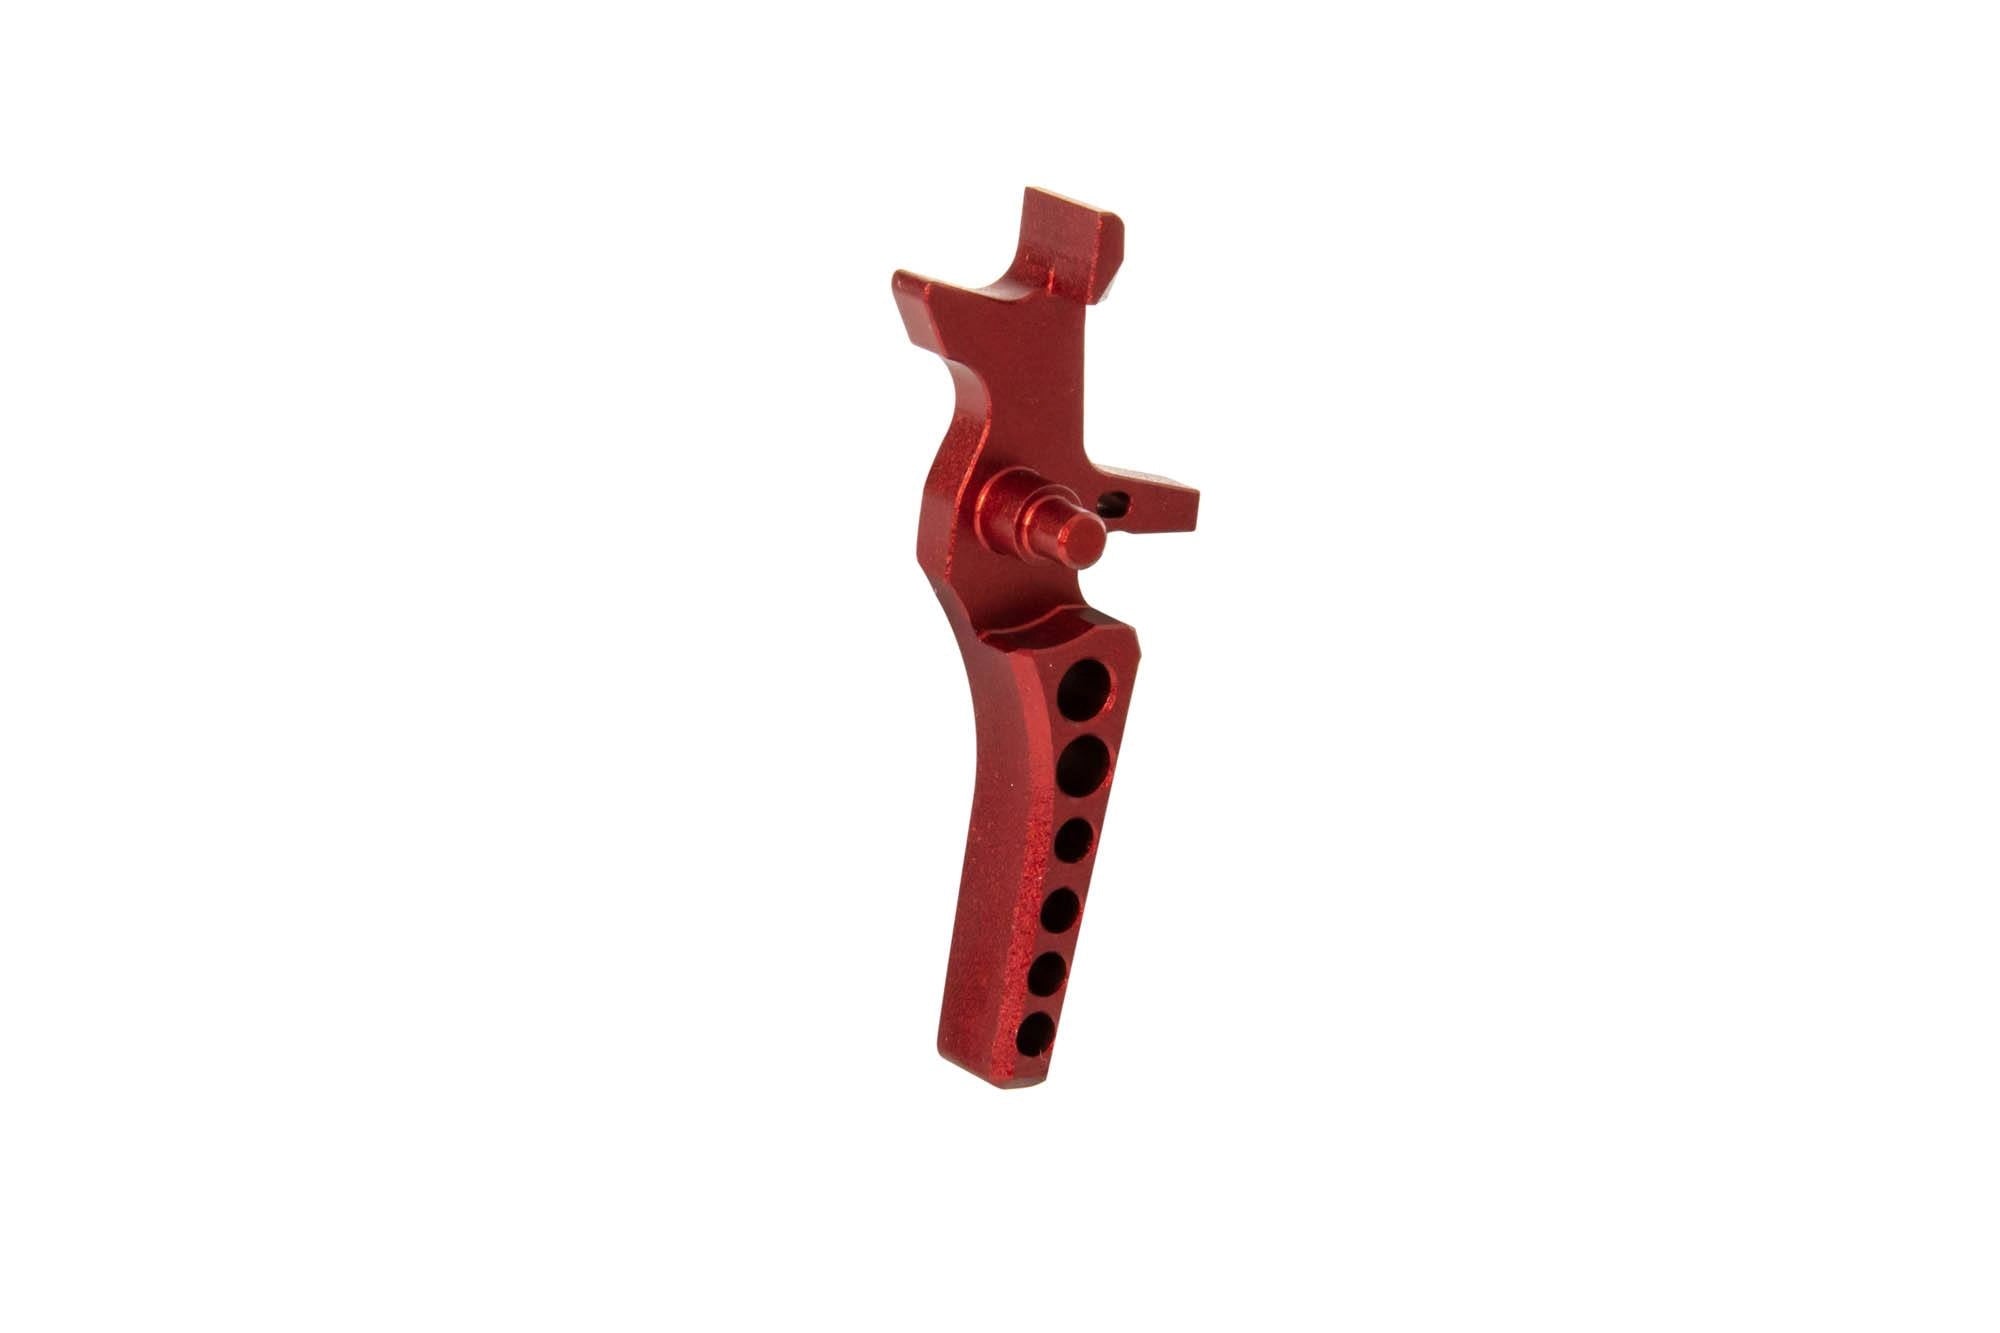 CNC Trigger for M4/M16 (C) Replicas - Red